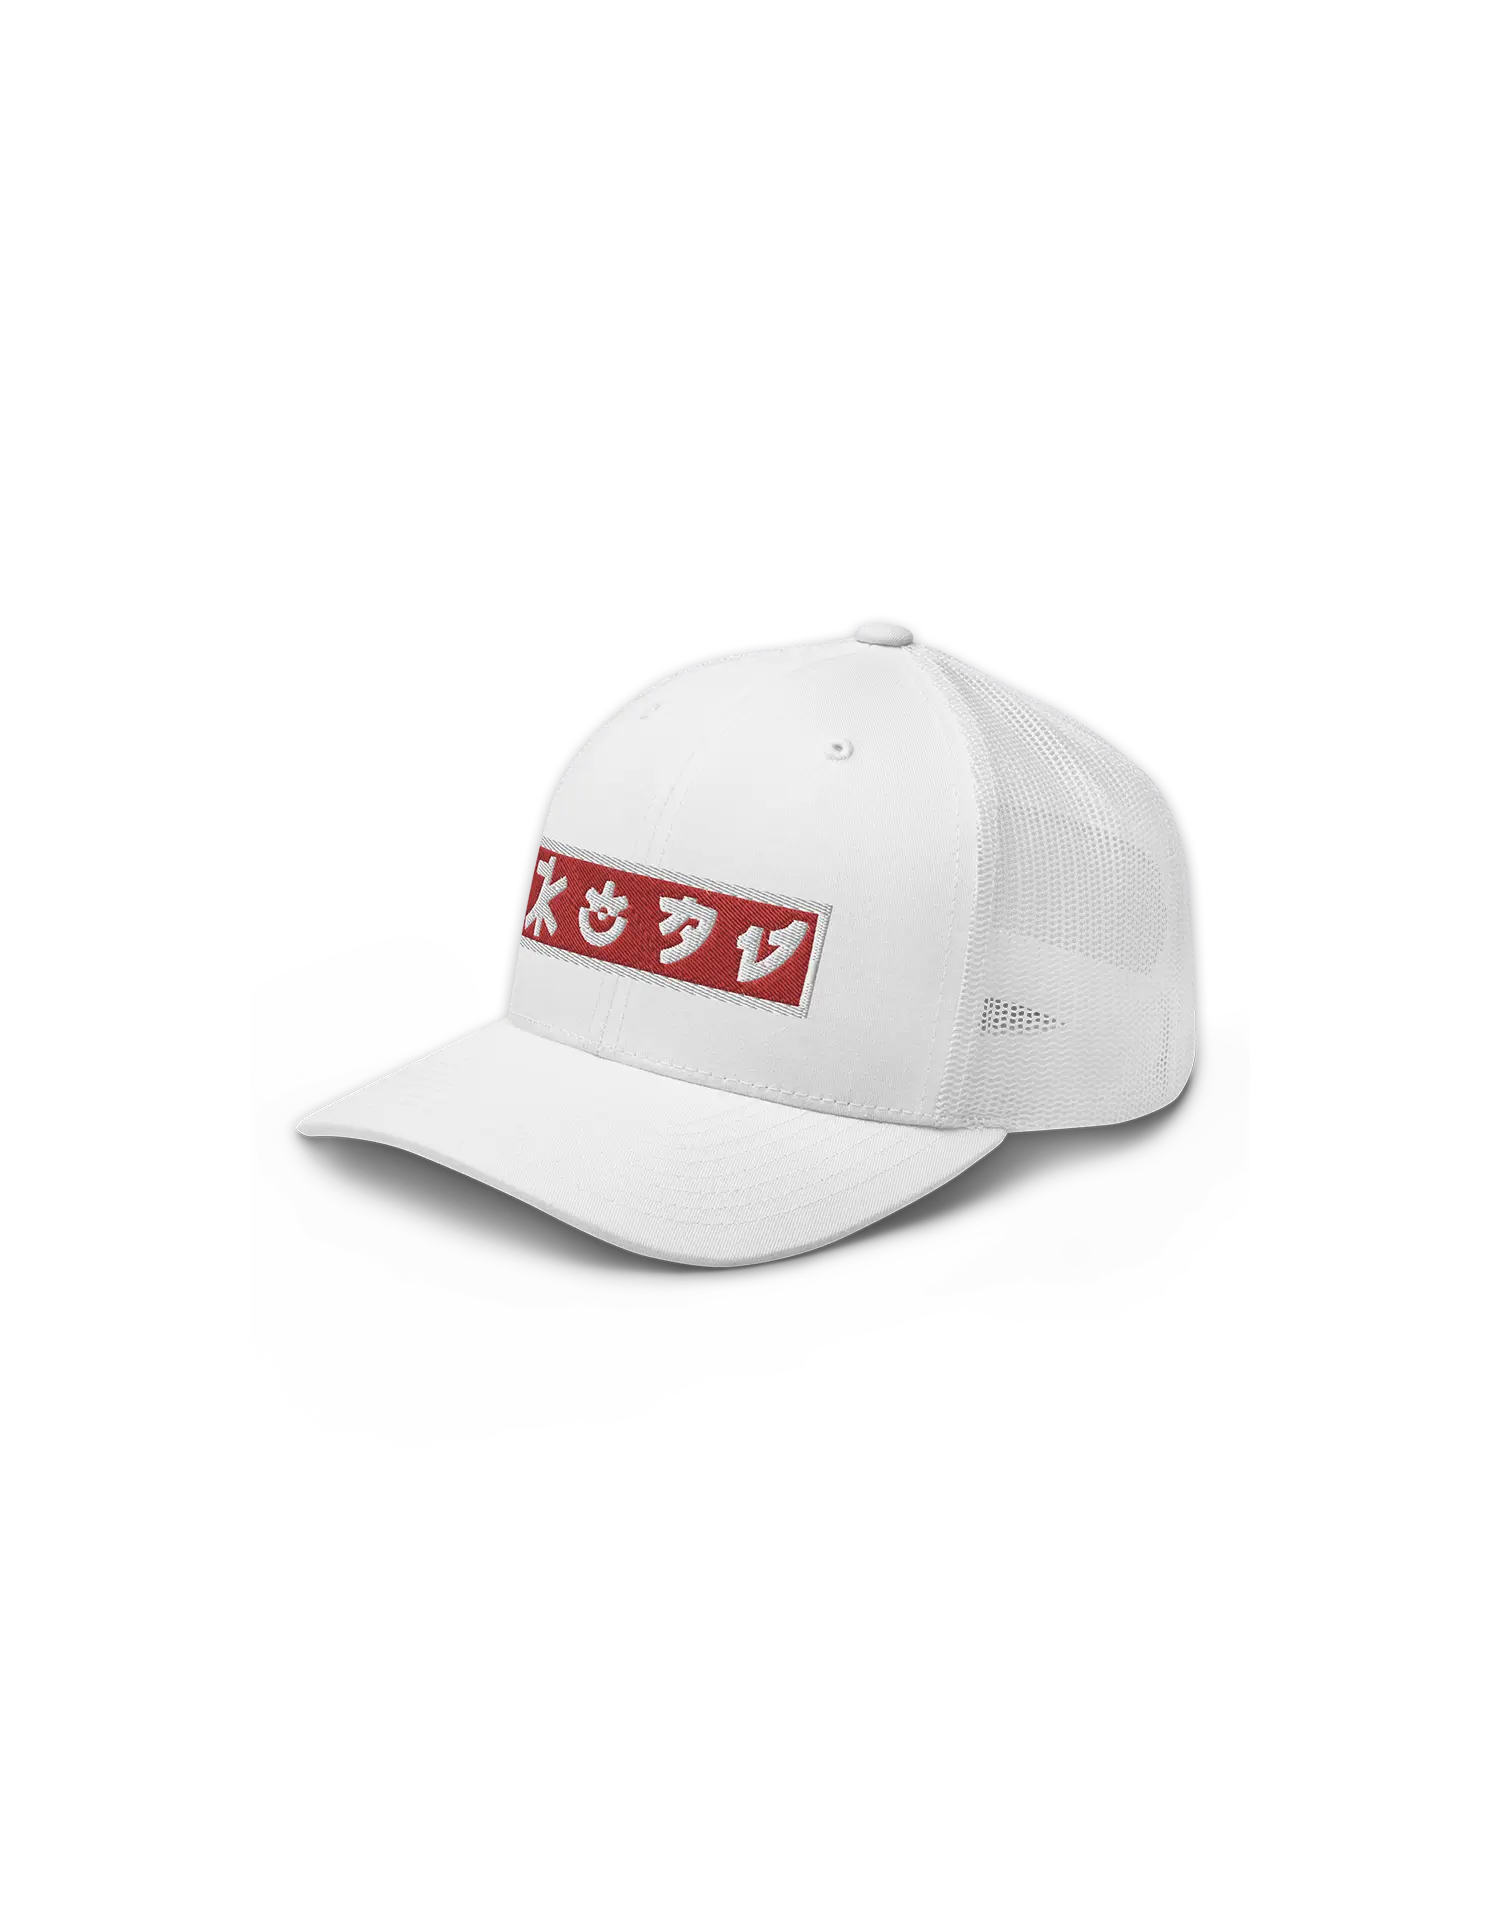 Red and White KOAV Retro Badge on a White Trucker Cap by KOAV